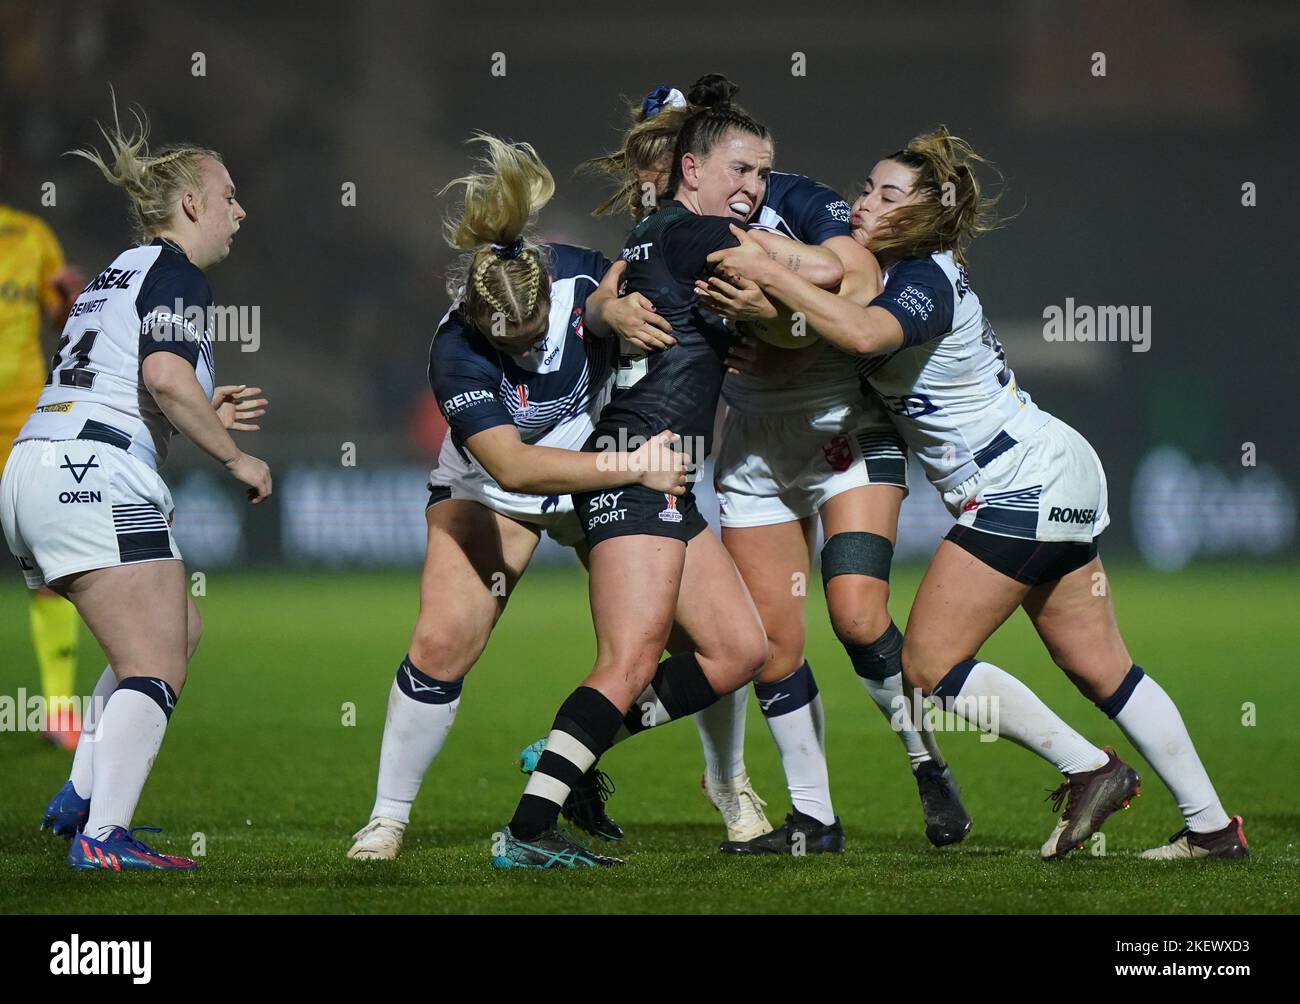 La Georgia Hale (al centro) della Nuova Zelanda combatte con Emily Rudge (a destra) dell'Inghilterra durante la partita semifinale della Coppa del mondo di rugby femminile al LNER Community Stadium, York. Data immagine: Lunedì 14 novembre 2022. Foto Stock